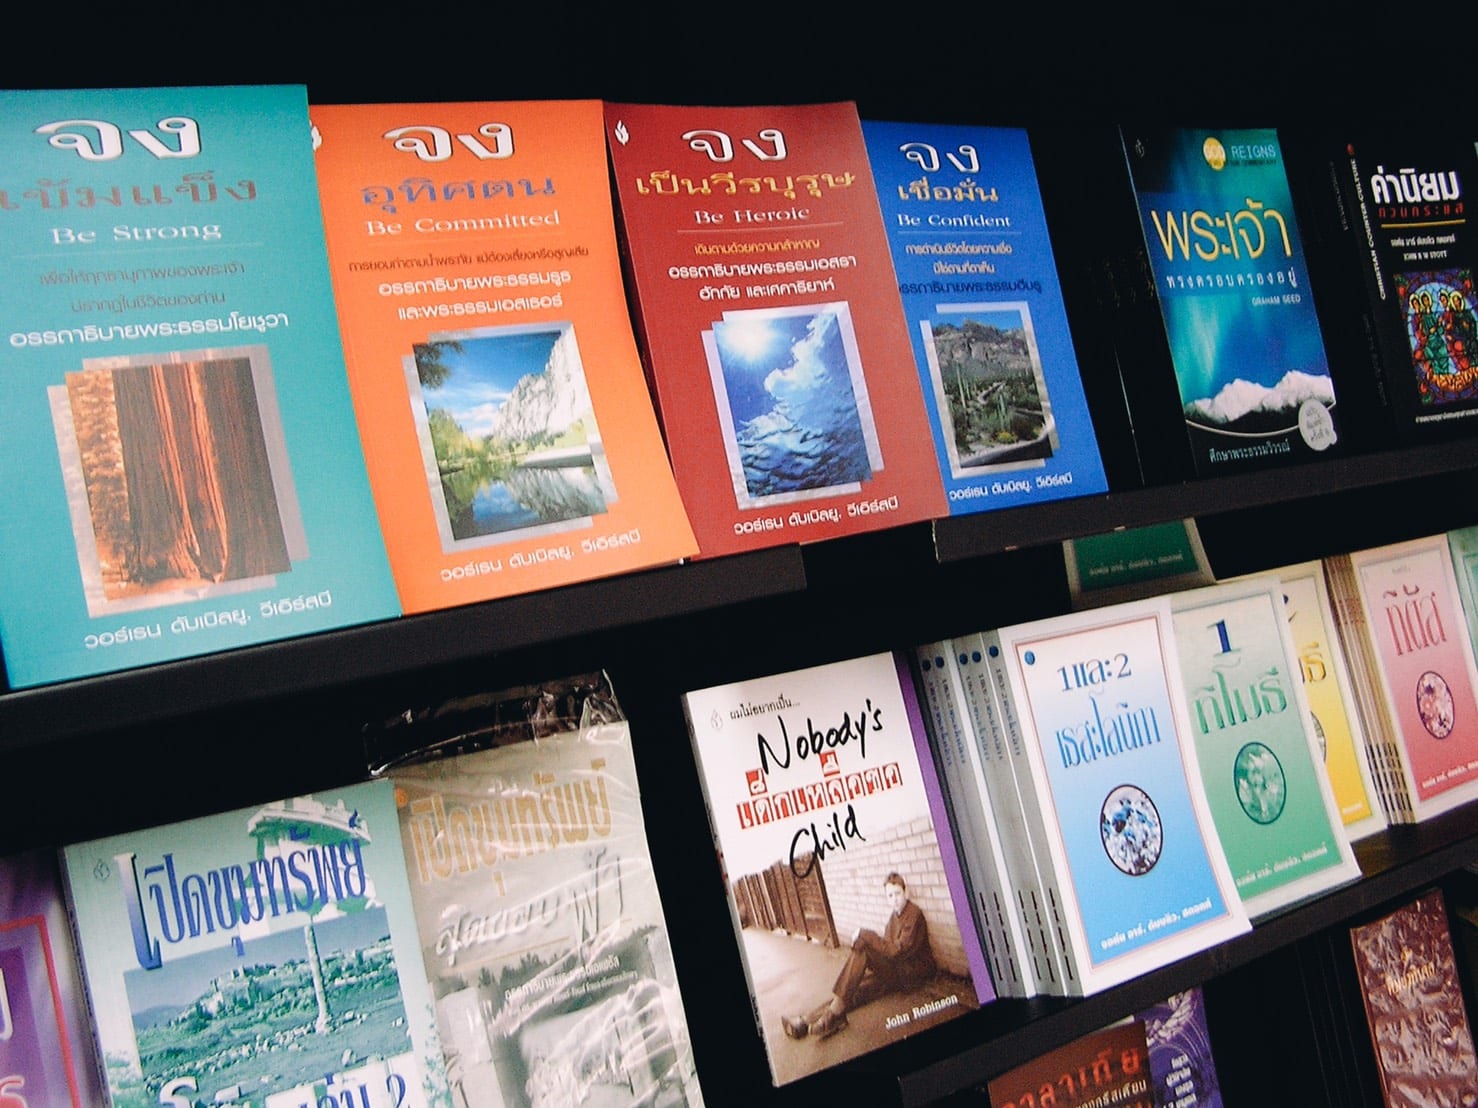 Thai books in a bookcase